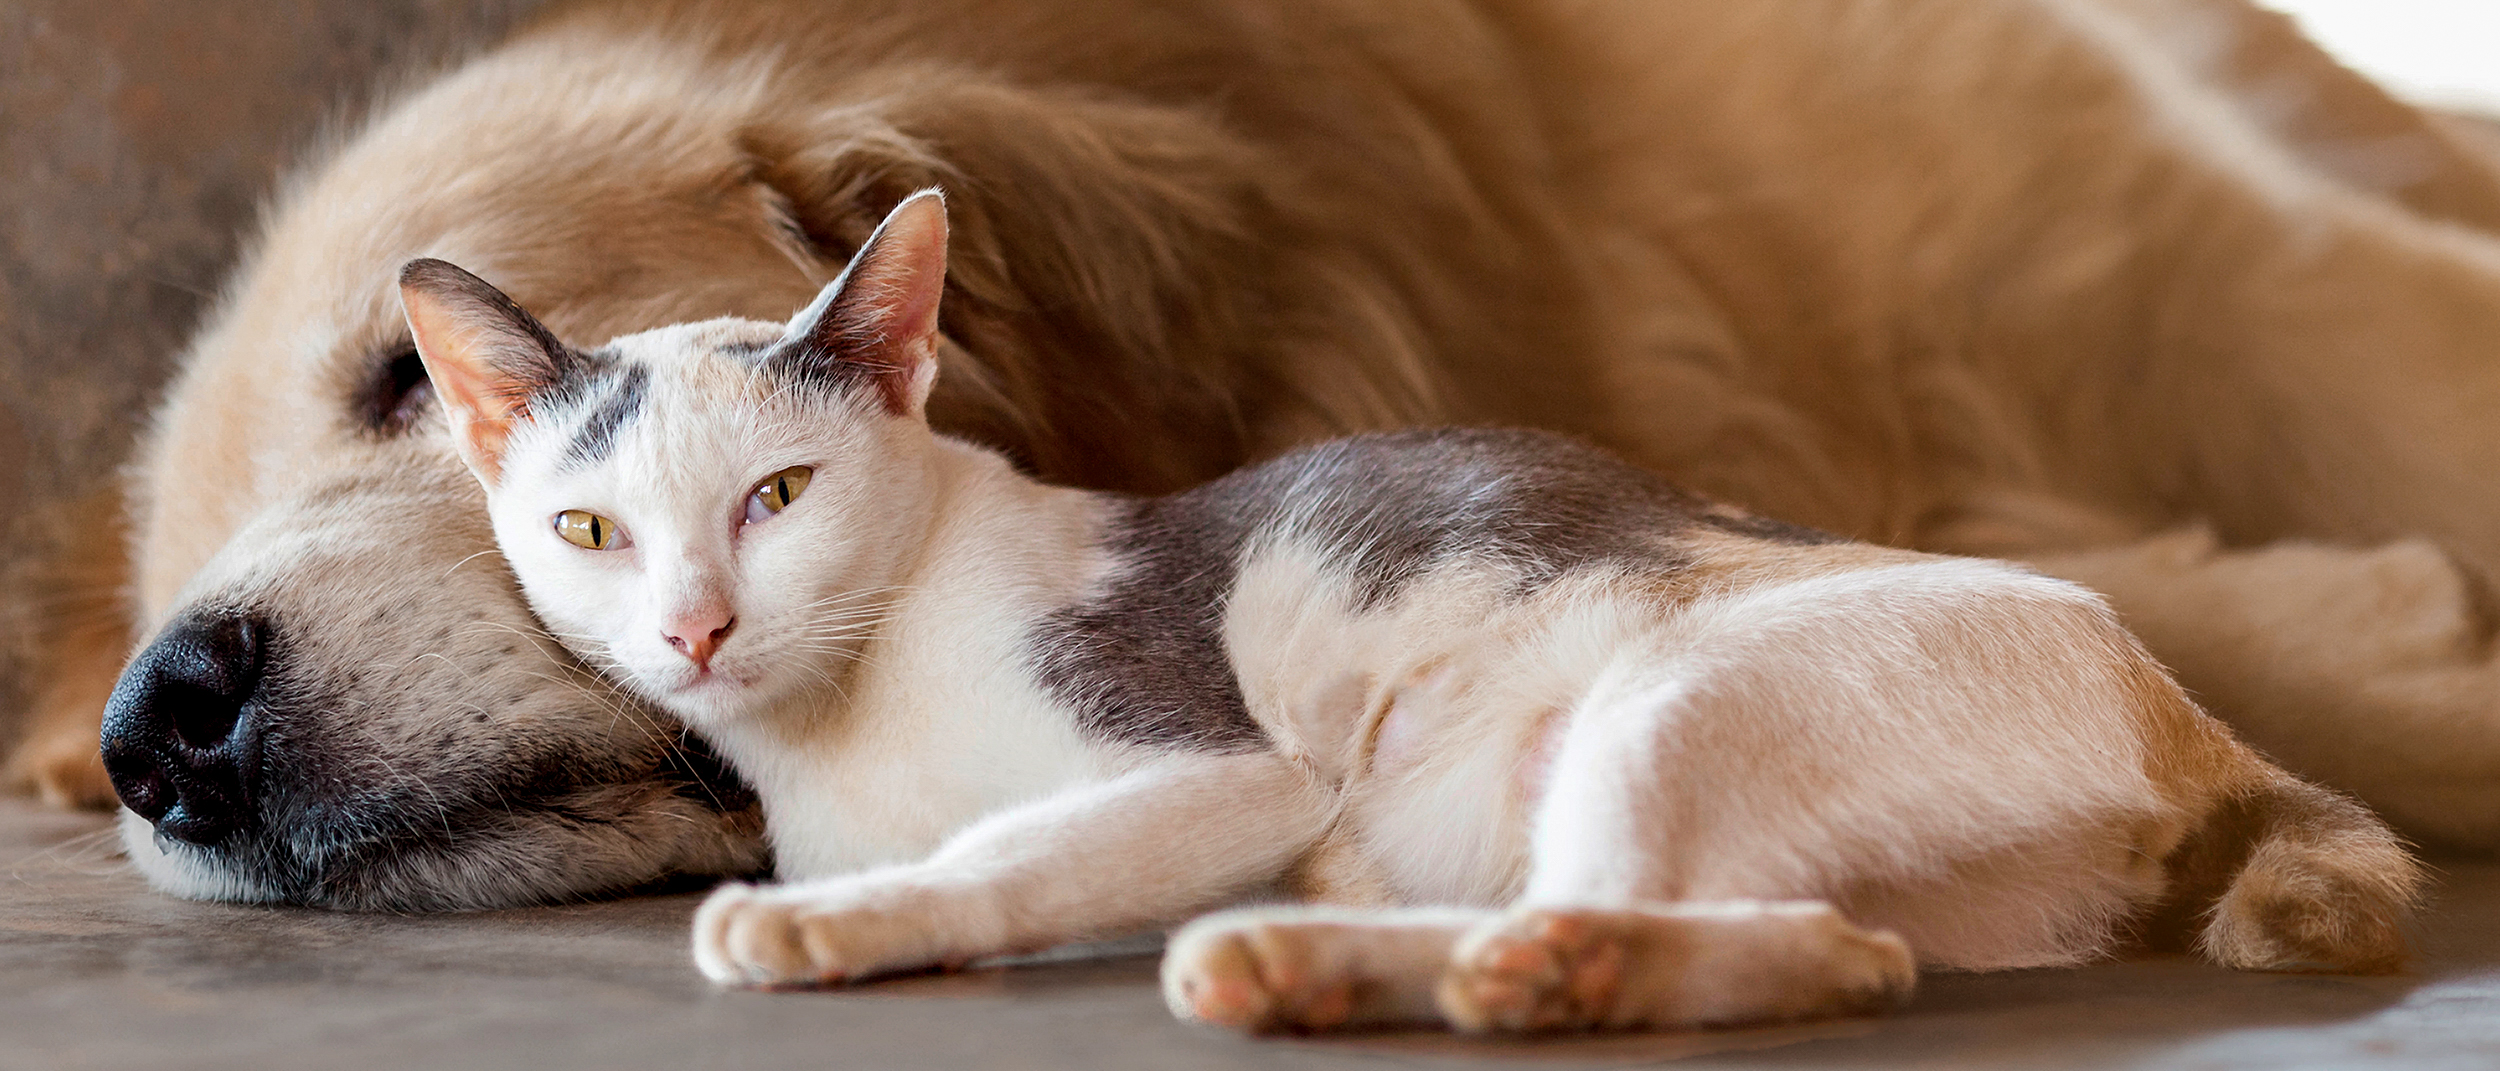 Знакомство кошек с другими питомцами - практические советы | Royal Canin UA